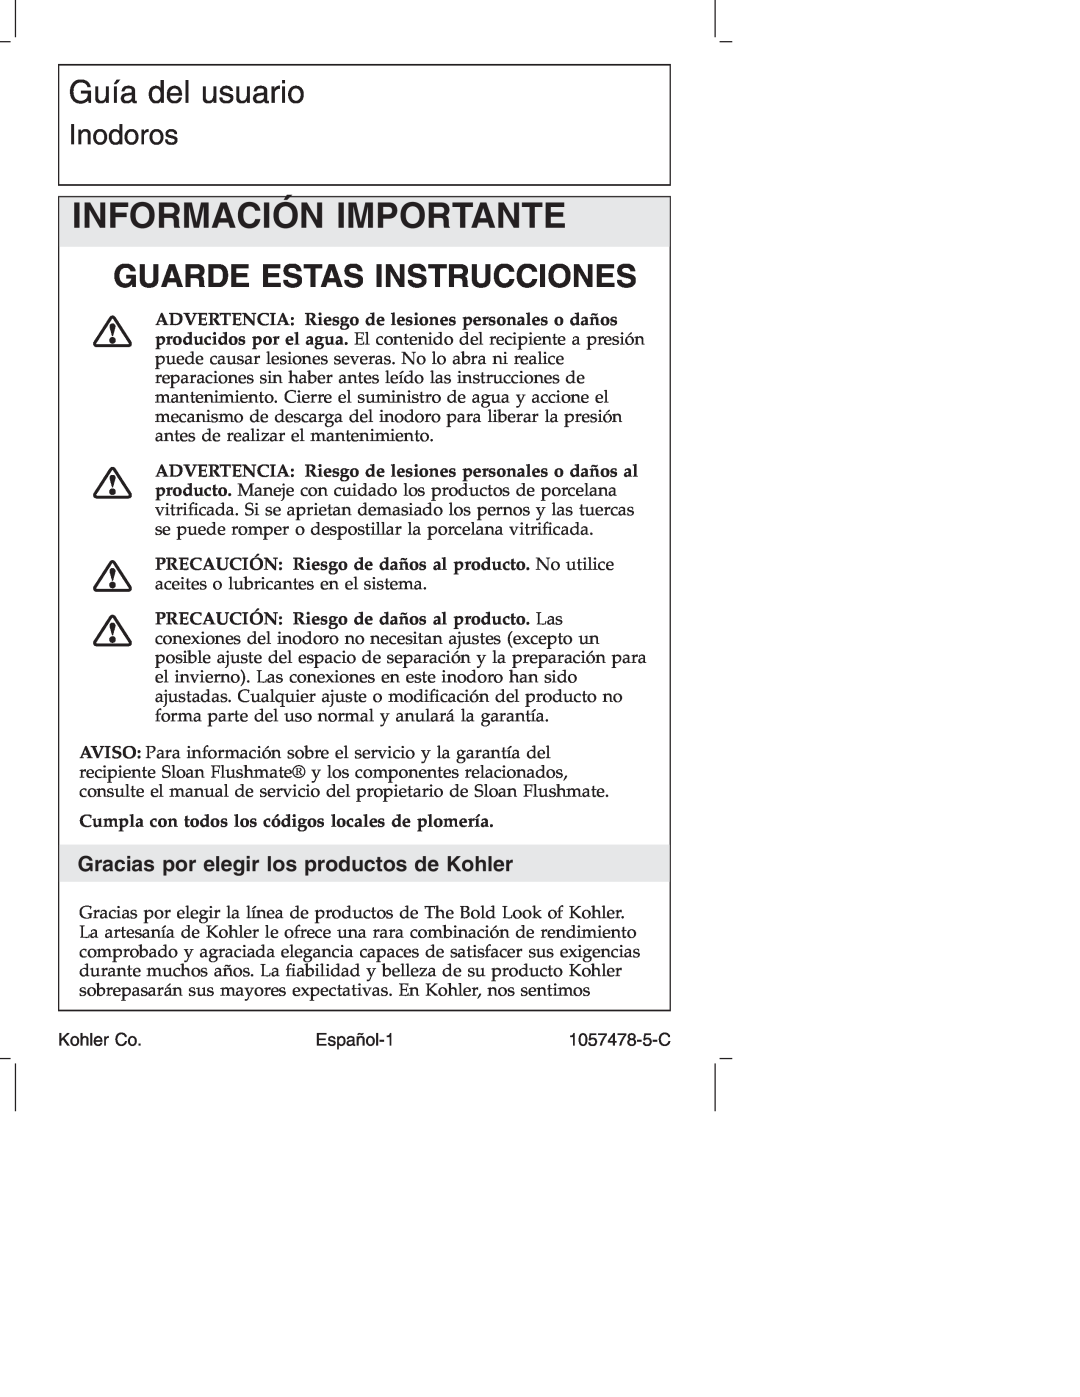 Kohler K-3393 manual Información Importante, Guía del usuario, Guarde Estas Instrucciones, Inodoros 